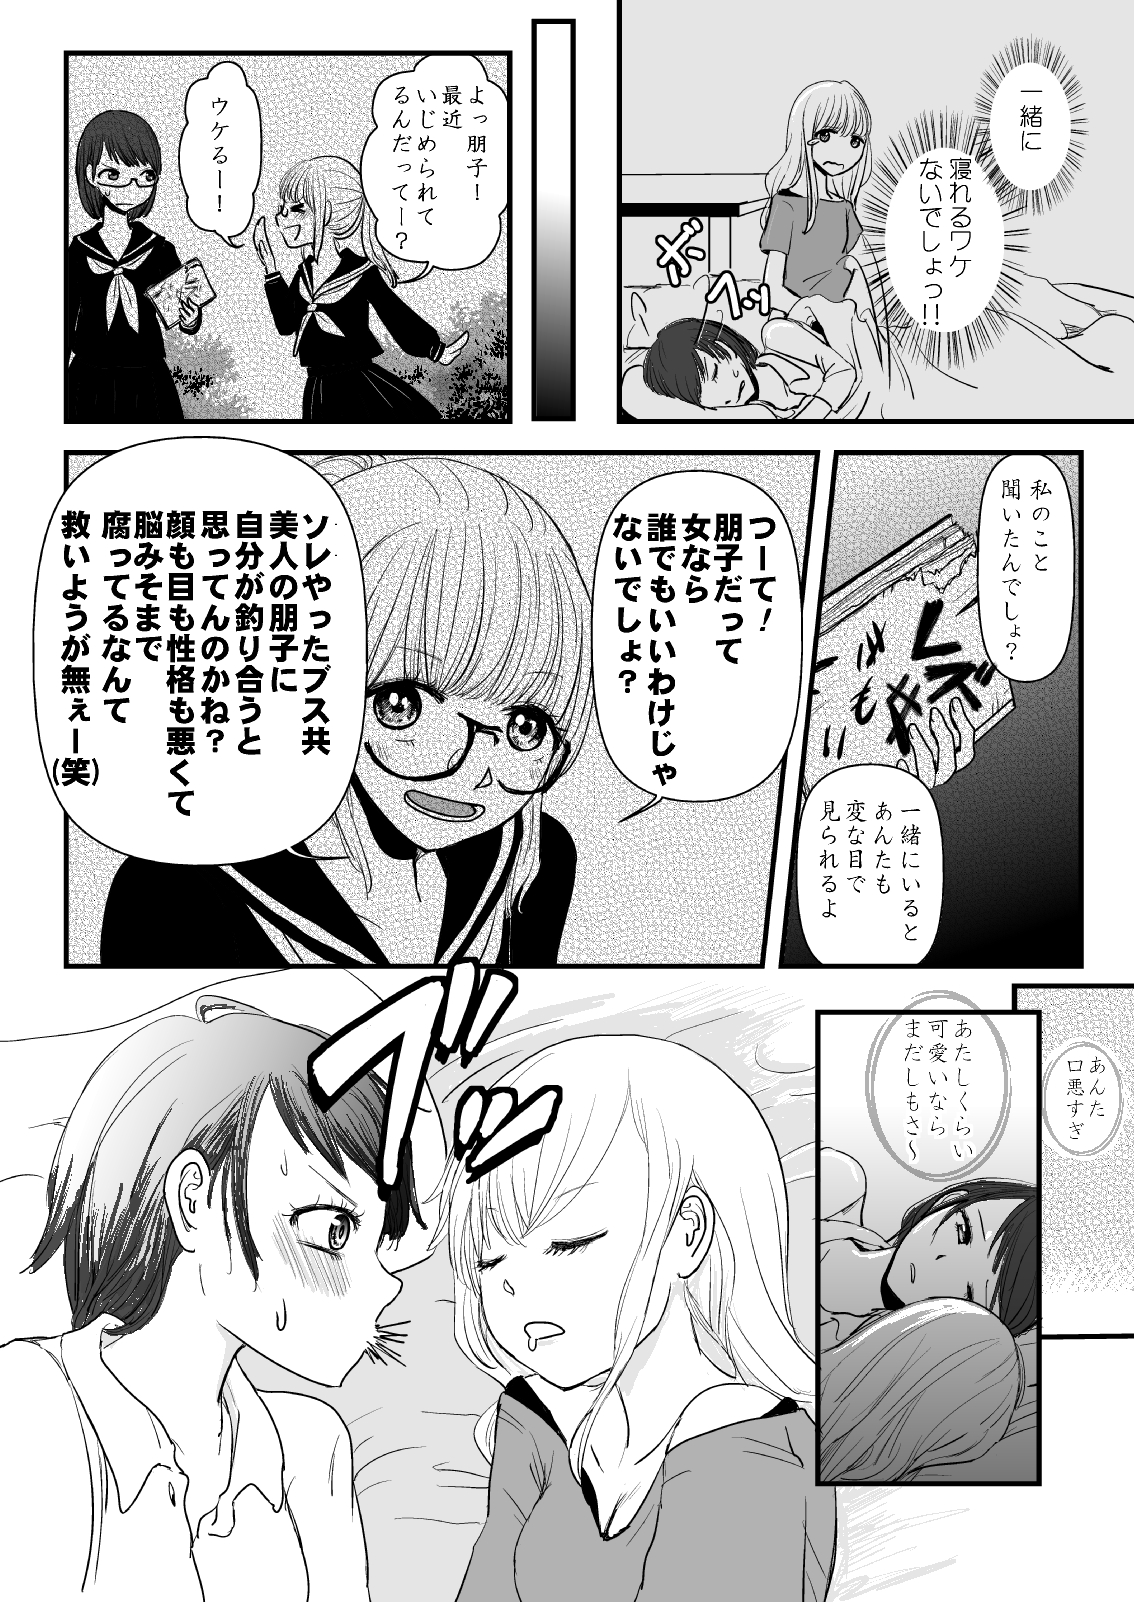 【漫画】“Curry味のUNKO”から始まるピュアな恋愛の画像